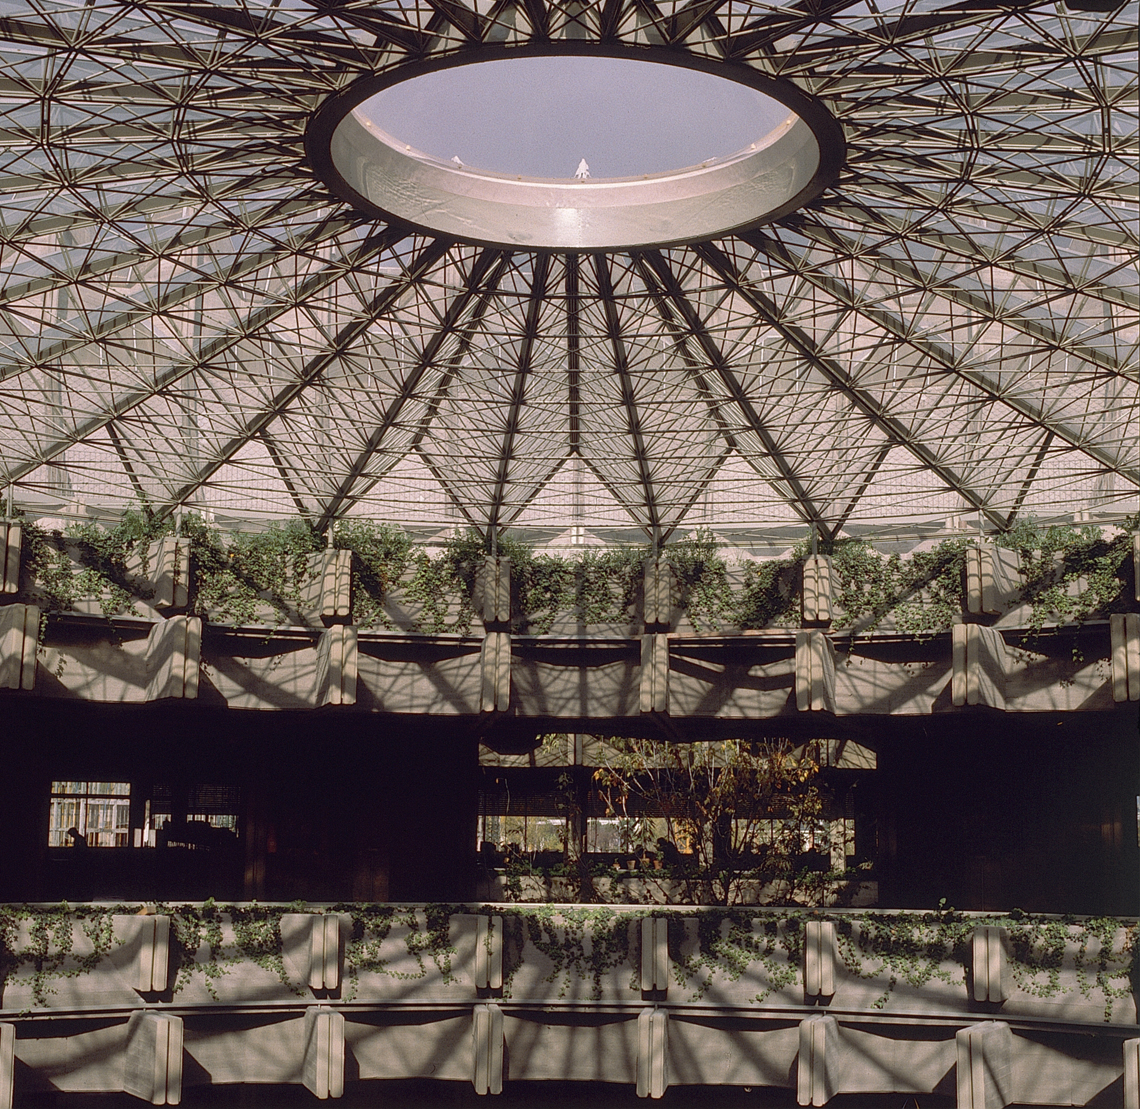 Centro de restauraciones, ‘la Corona de Espinas’ Ciudad Universitaria, Madrid Proyecto de F. Higueras en colaboración con Antonio Miró y J. A. Fernández Ordóñez 1965-1985